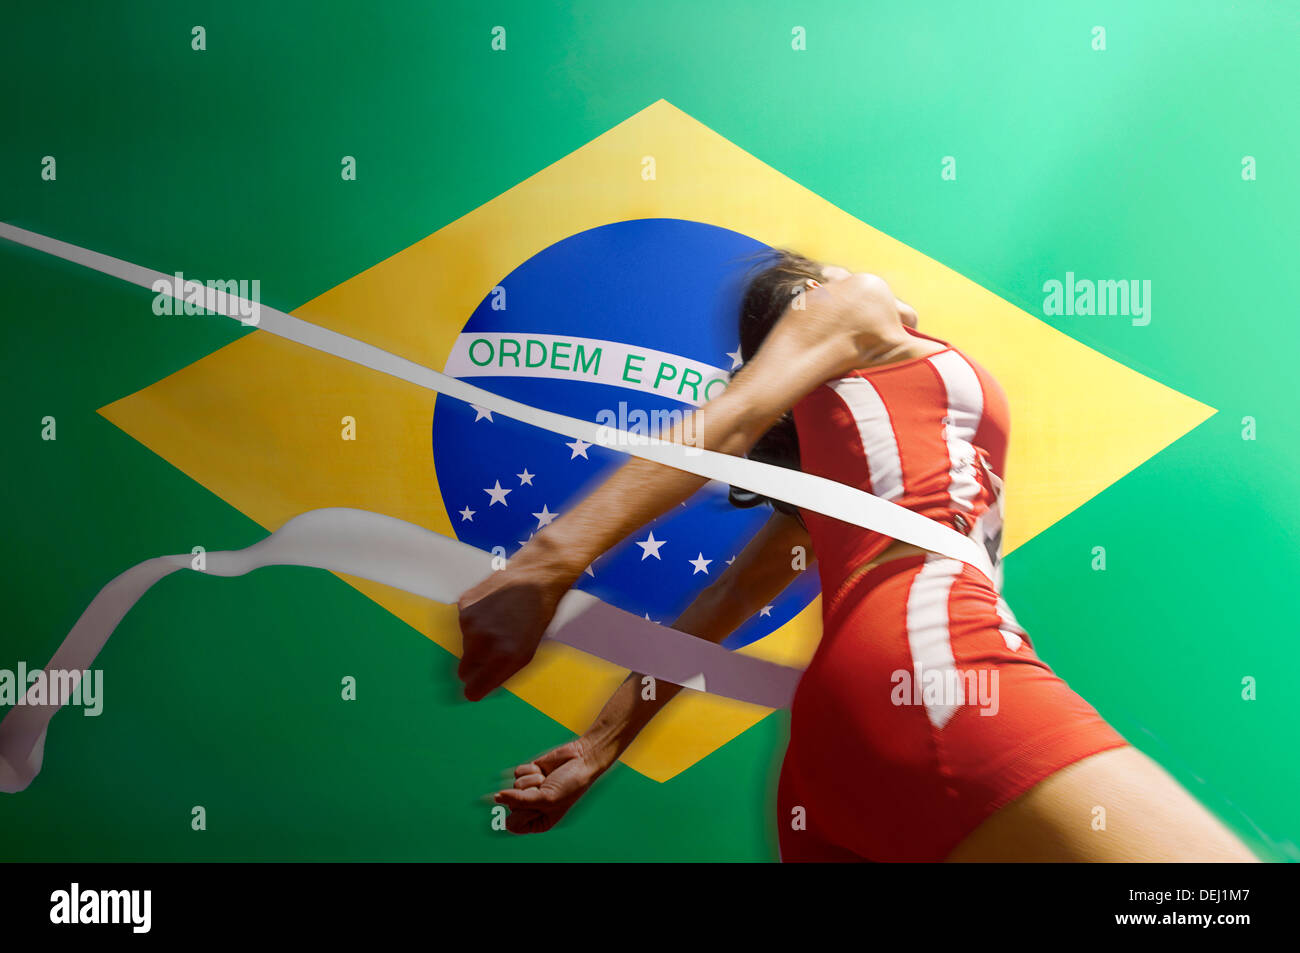 Runner Breaking through the finishing line tape over Brazilian flag Stock Photo